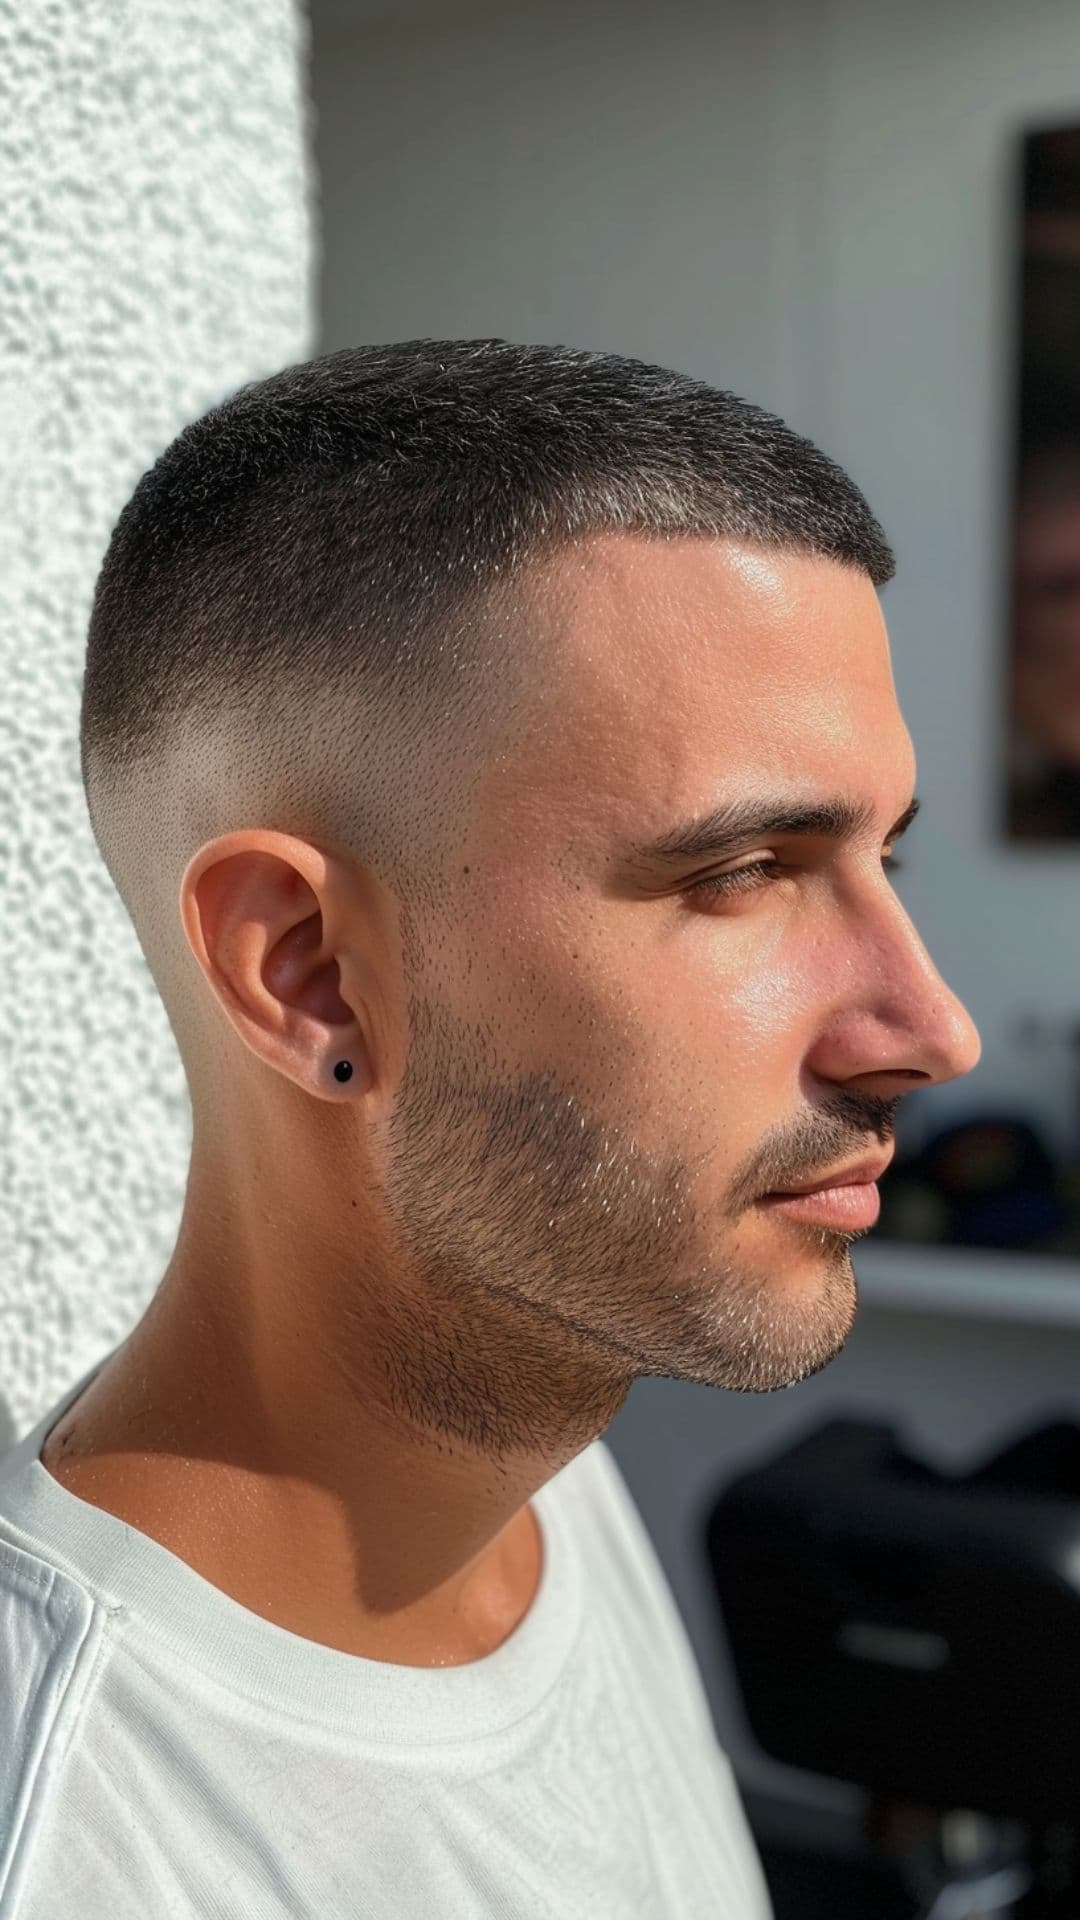 A man modelling a buzz haircut.